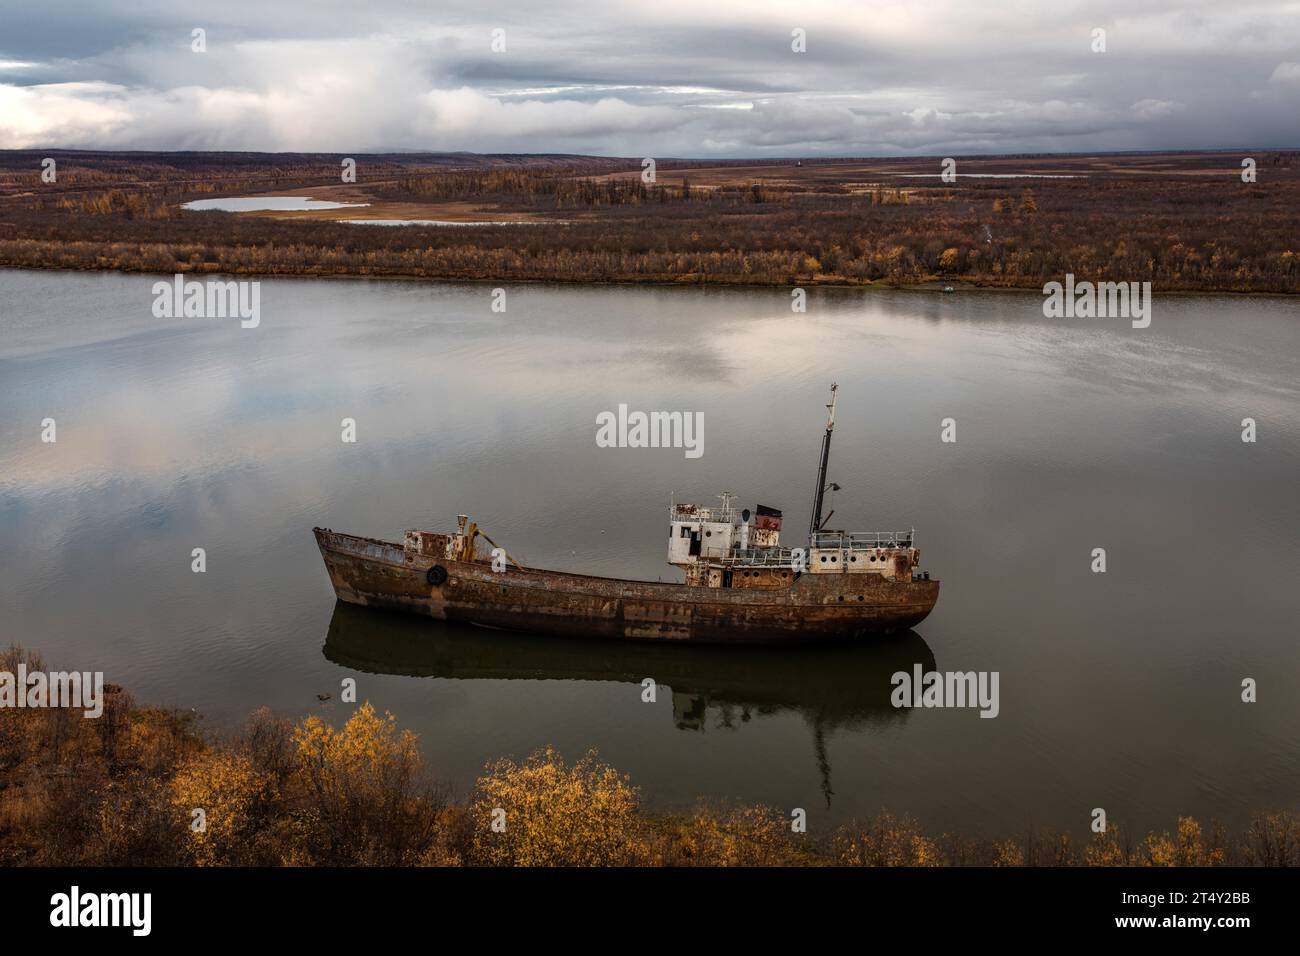 Shipwreck, Kolyma, Chersky, Yakutia, Russia Stock Photo